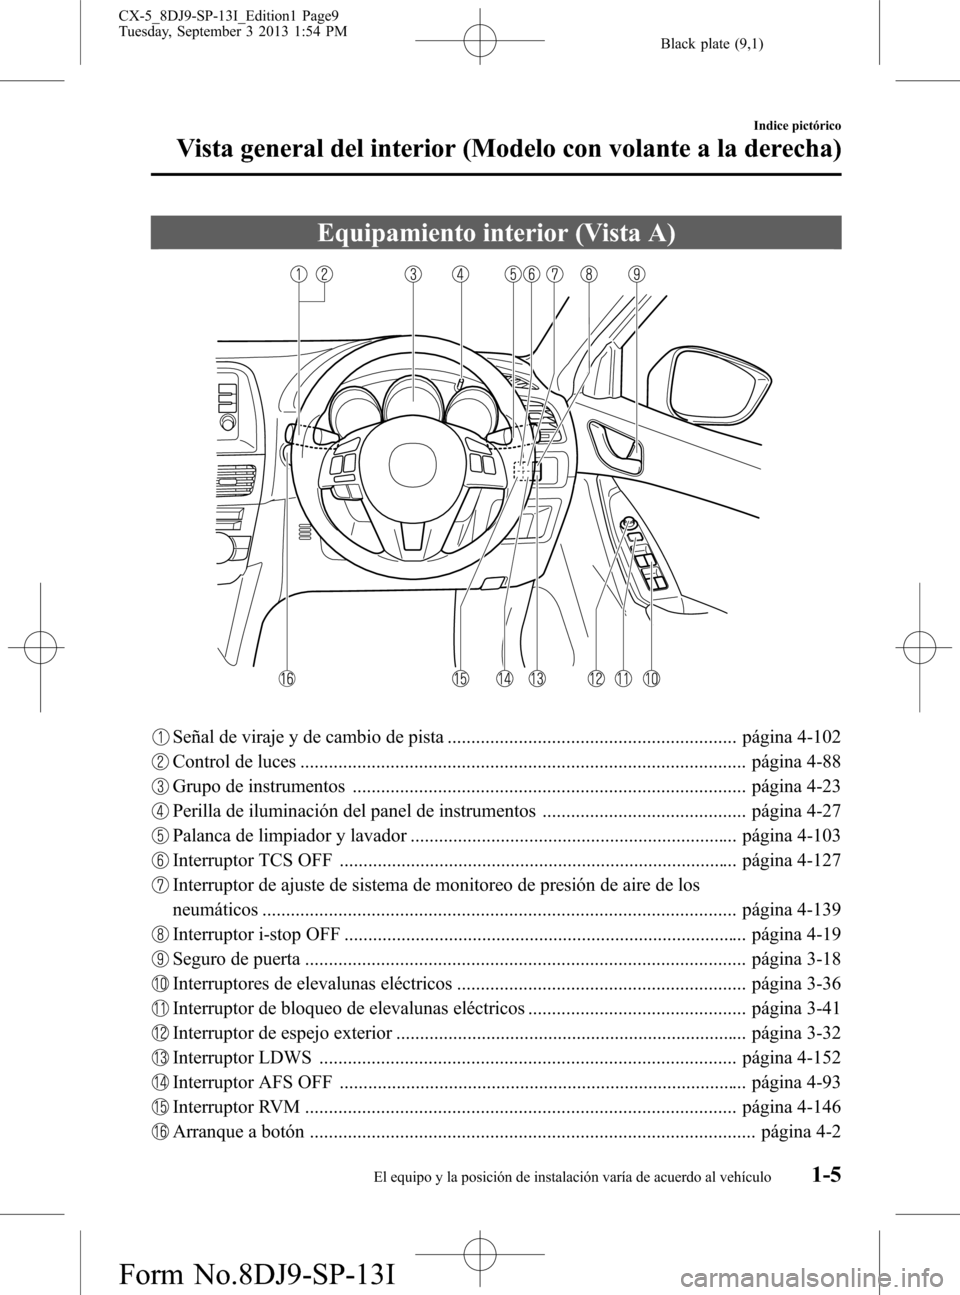 MAZDA MODEL CX-5 2014  Manual del propietario (in Spanish) Black plate (9,1)
Equipamiento interior (Vista A)
Señal de viraje y de cambio de pista ............................................................. página 4-102
Control de luces ...................